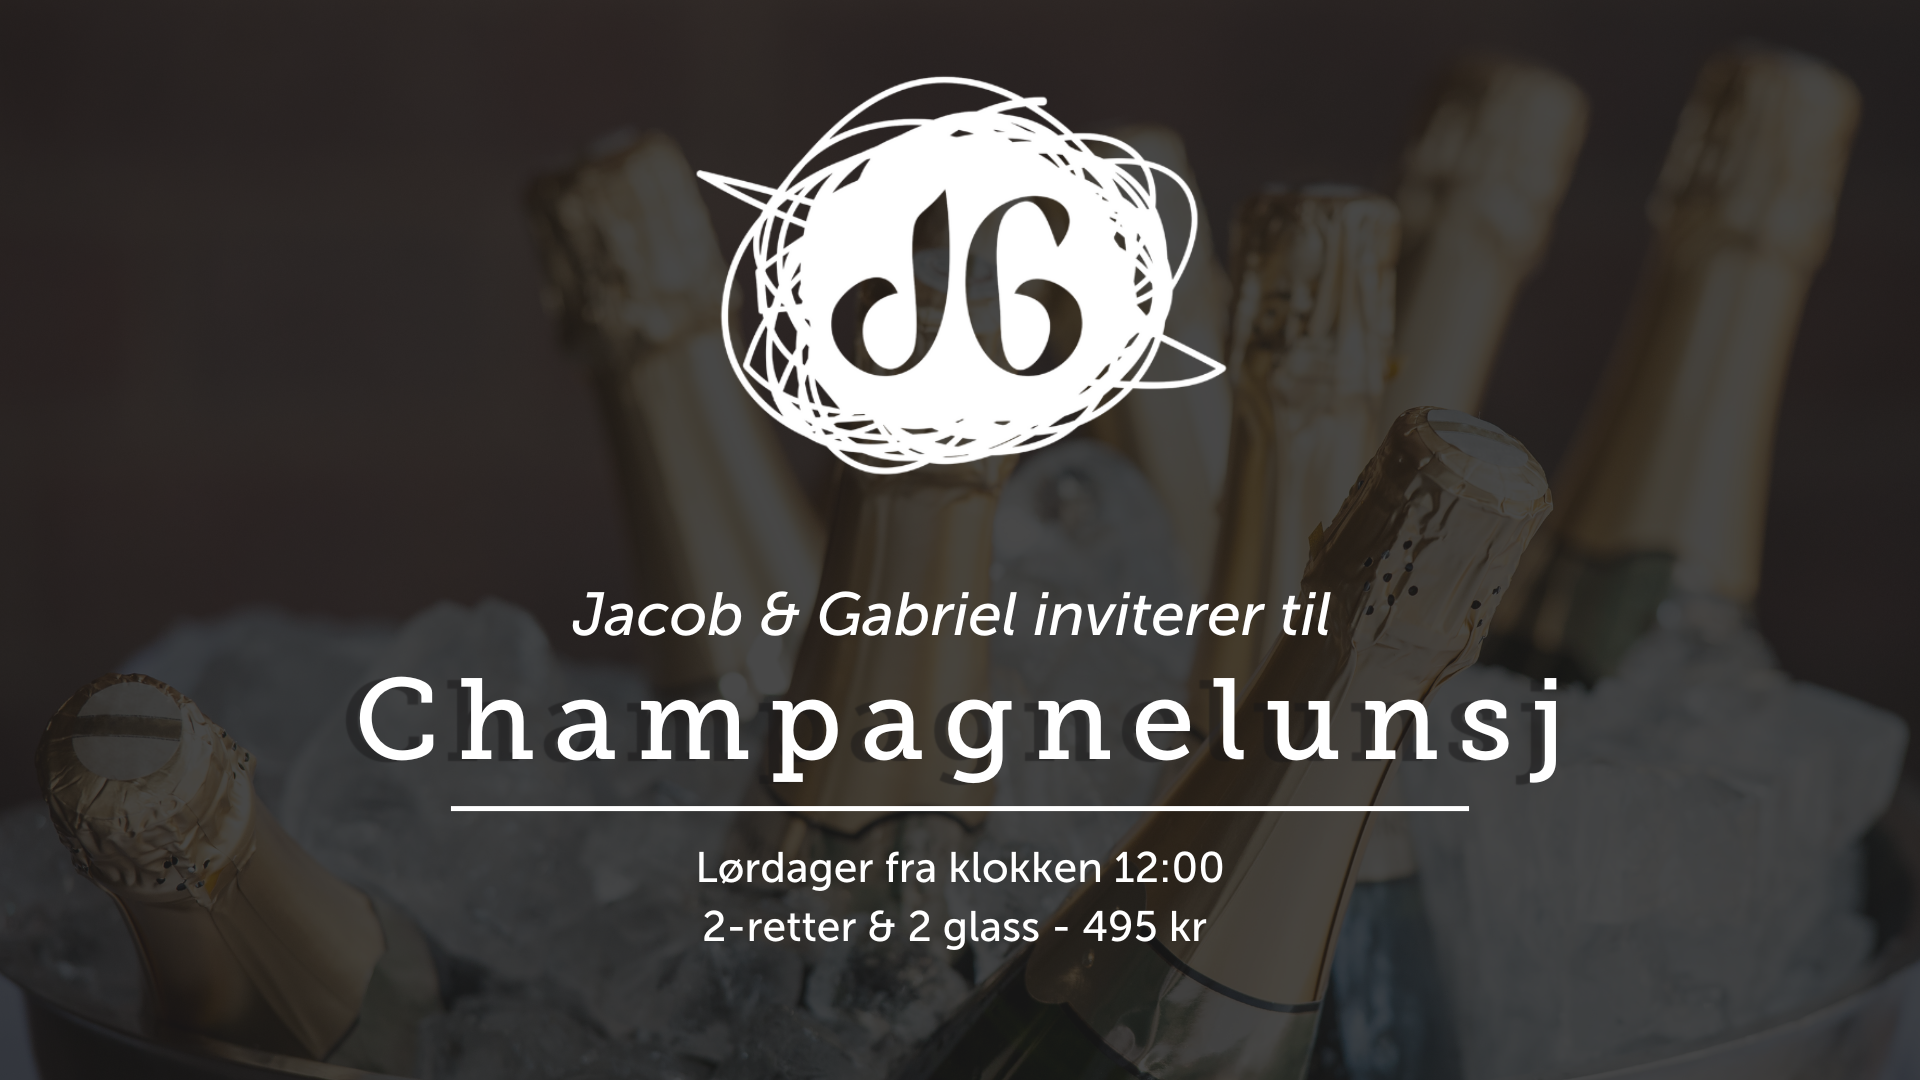 Champagnelunsj på Jacob & Gabriel. Åpent fra 12:00. Pris for 2-retter og 2 glass champagne er 495 kr.